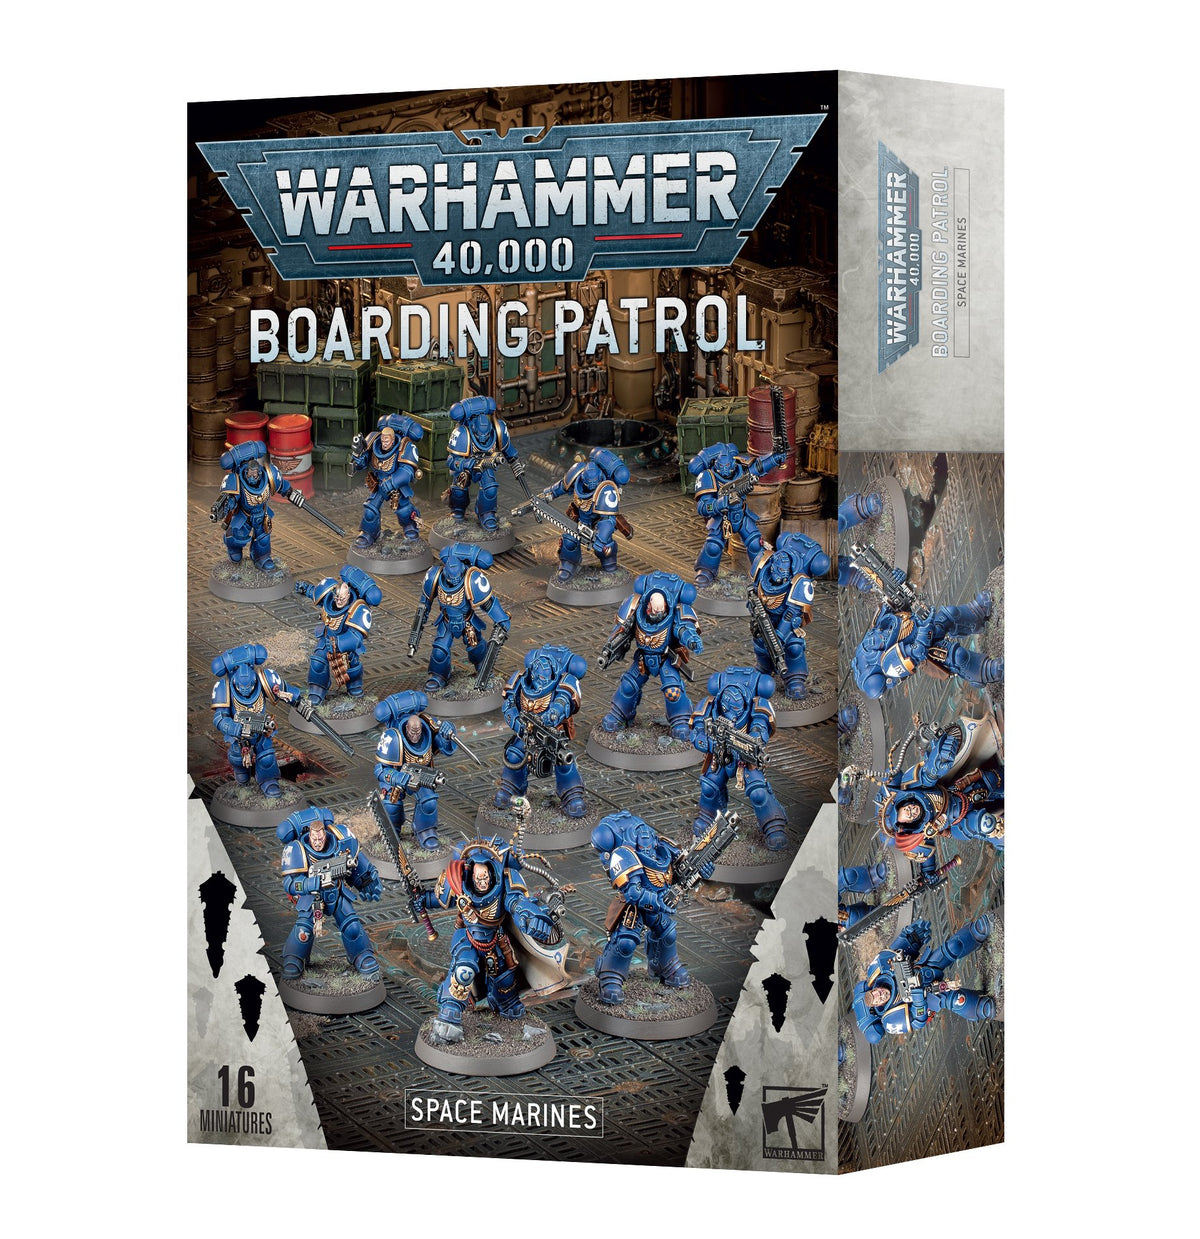 Boarding Patrol - Space Marines (Warhammer 40,000)